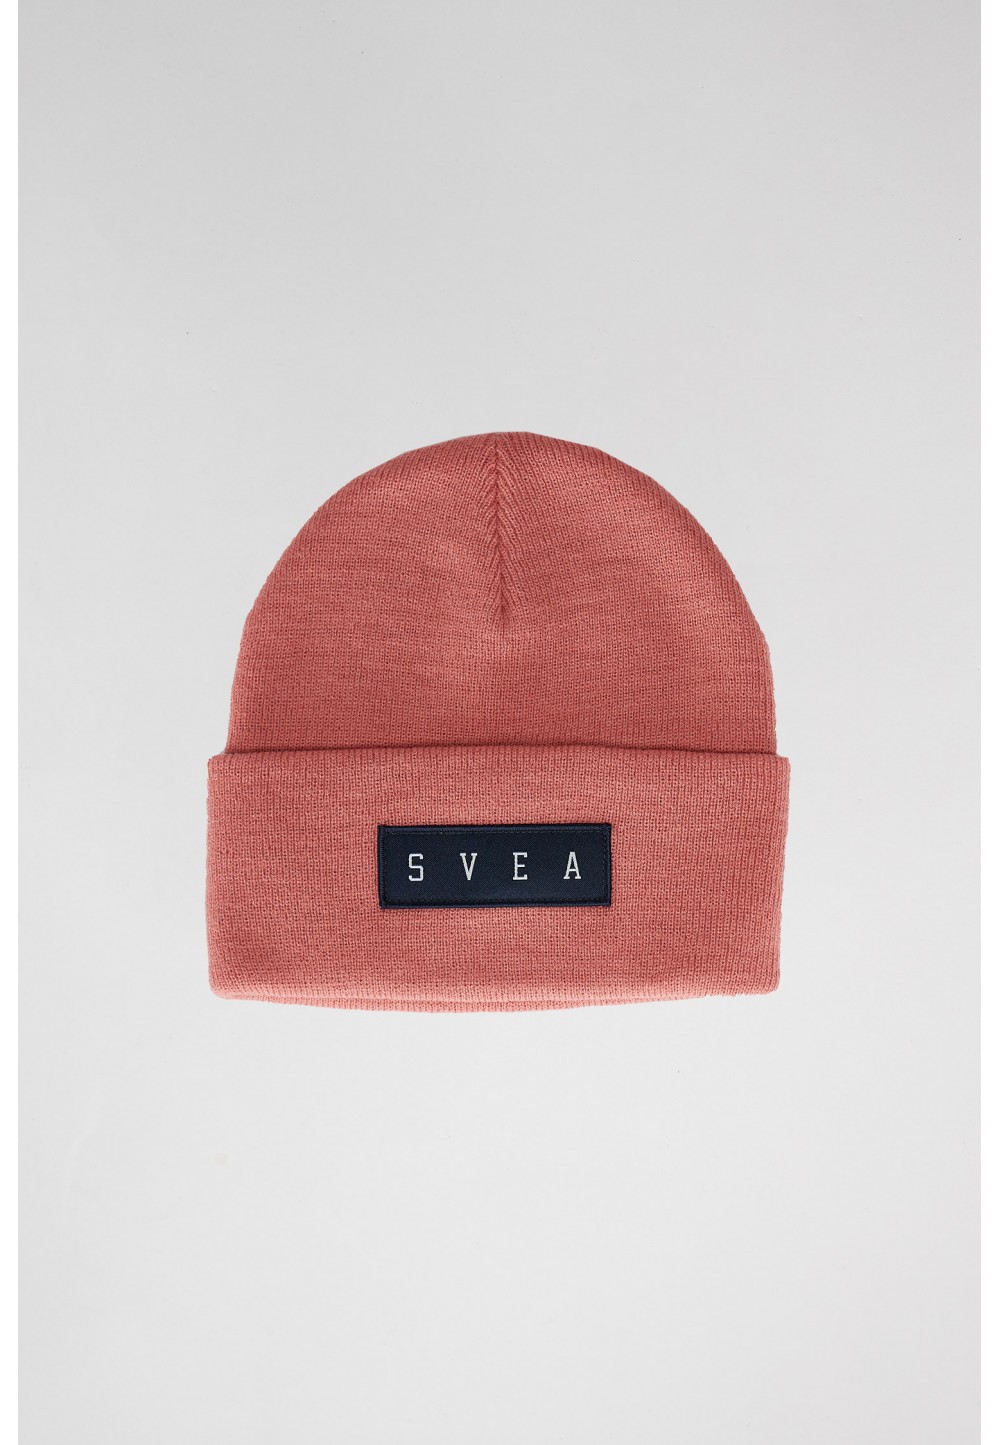  Стильна шапка від бренду SVEA